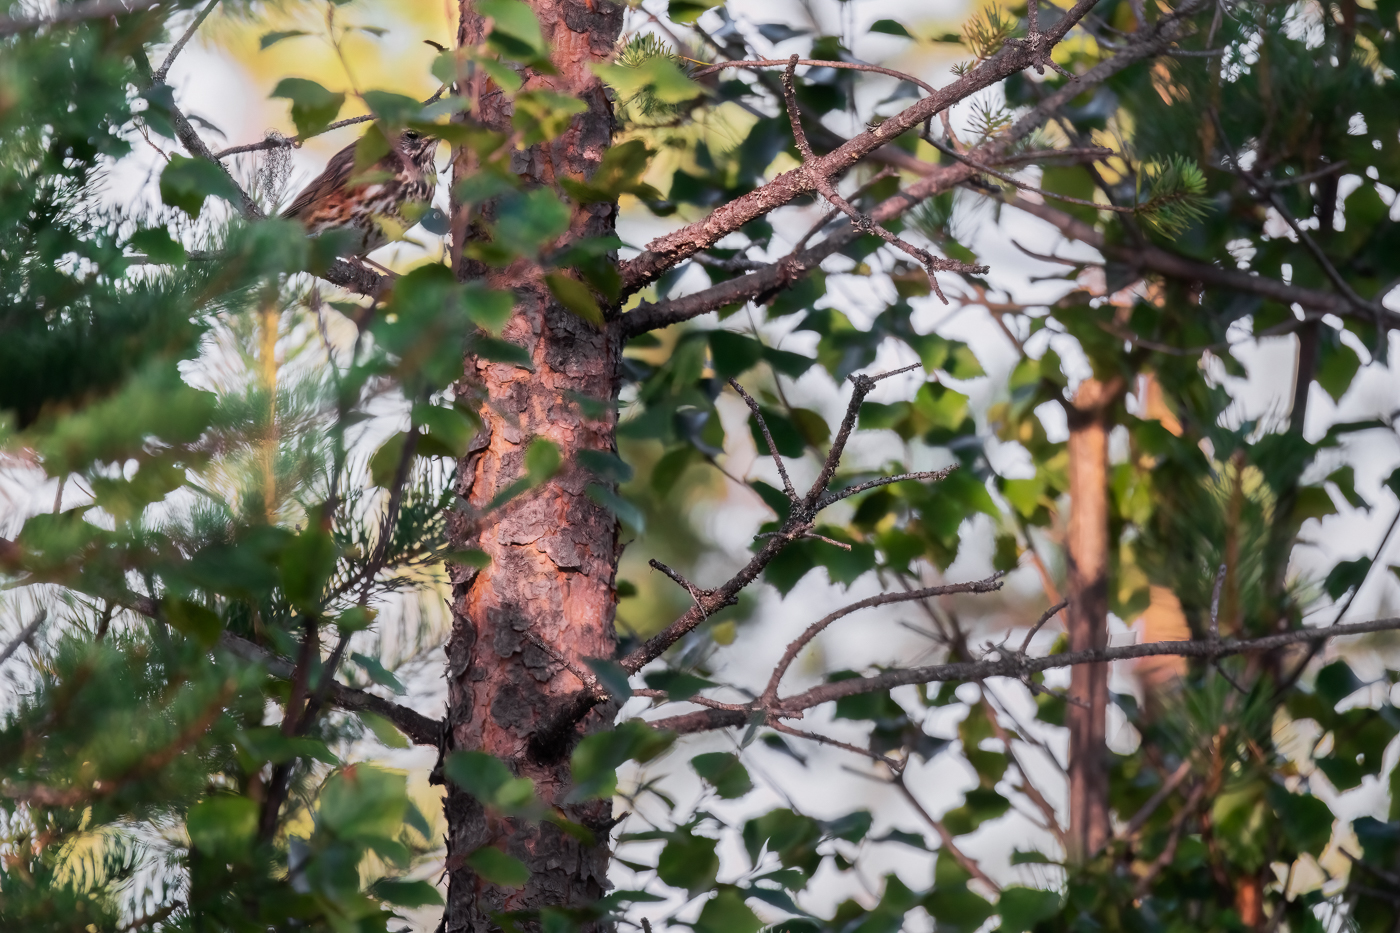 Un tordo sassello (Turdus iliacus), immobile, sfrutta le sue doti mimetiche per passare inosservato. Oulanka National Park, Finlandia.